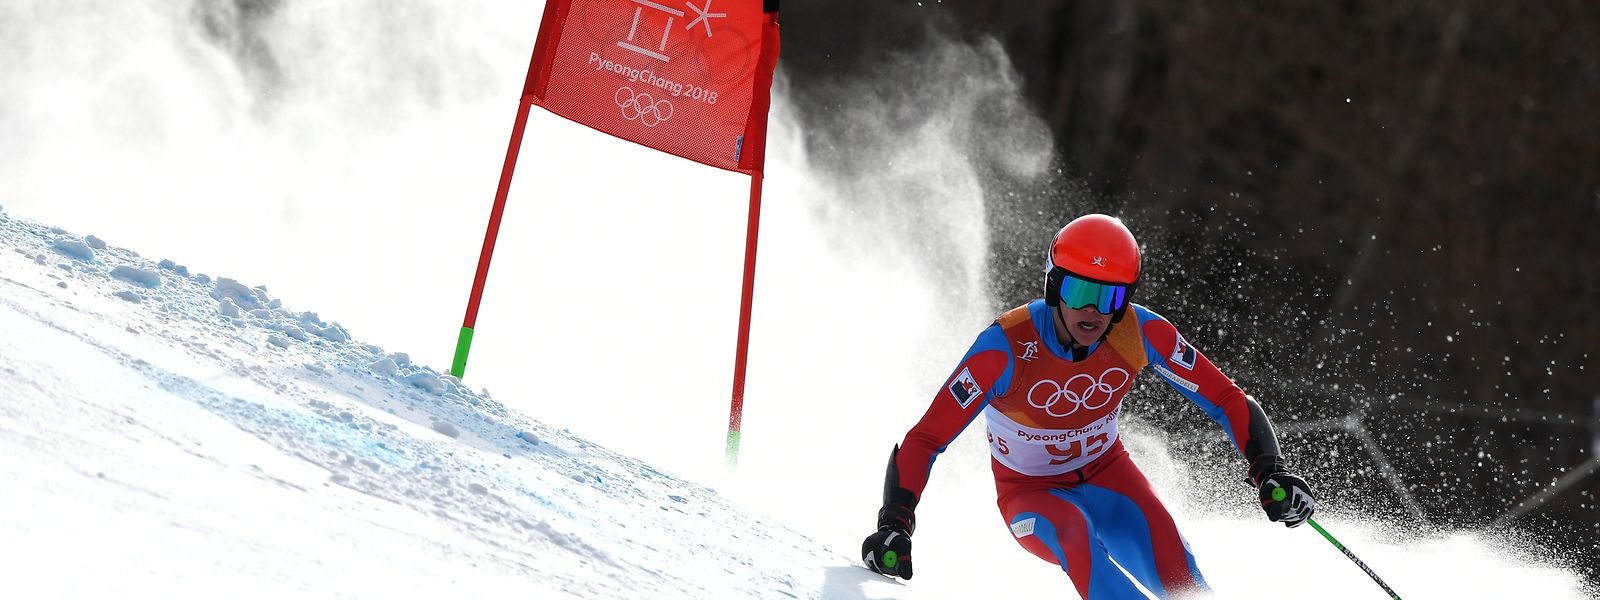 Matthieu Osch, de 22 anos, vai estar pela segunda vez nos Olímpicos de Inverno, depois de ter participado nos Jogos de PyeongChang em 2018.